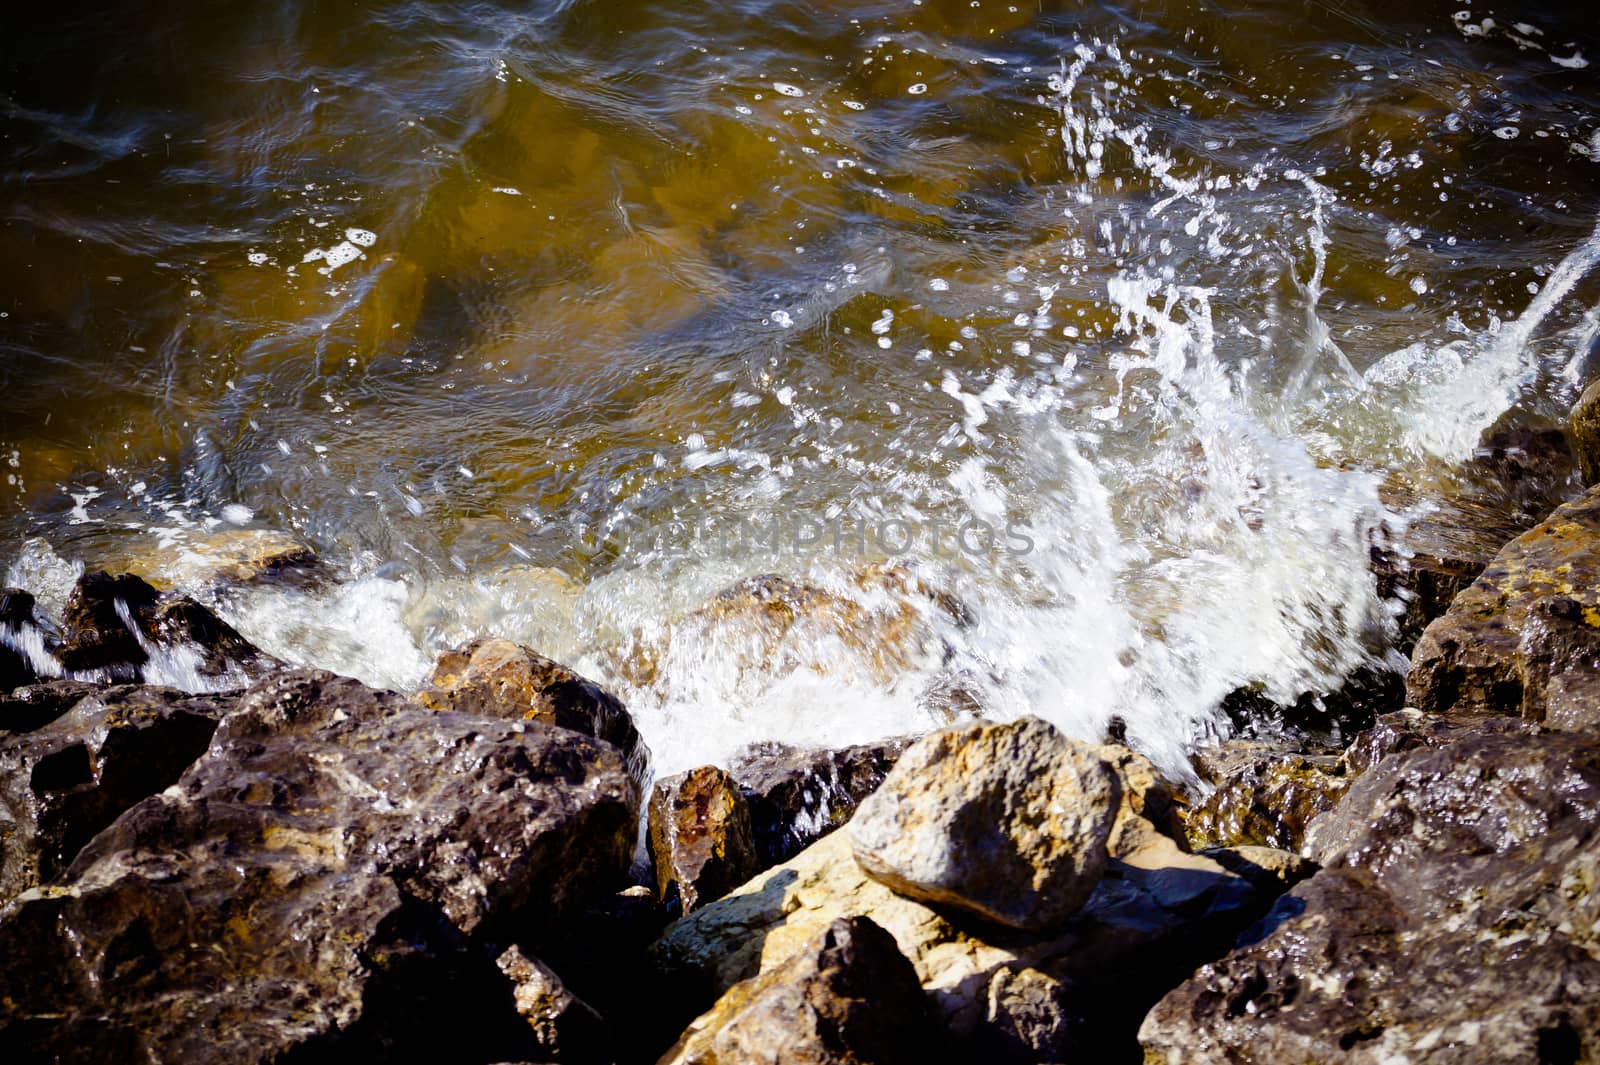 water wave breaks on the rocks